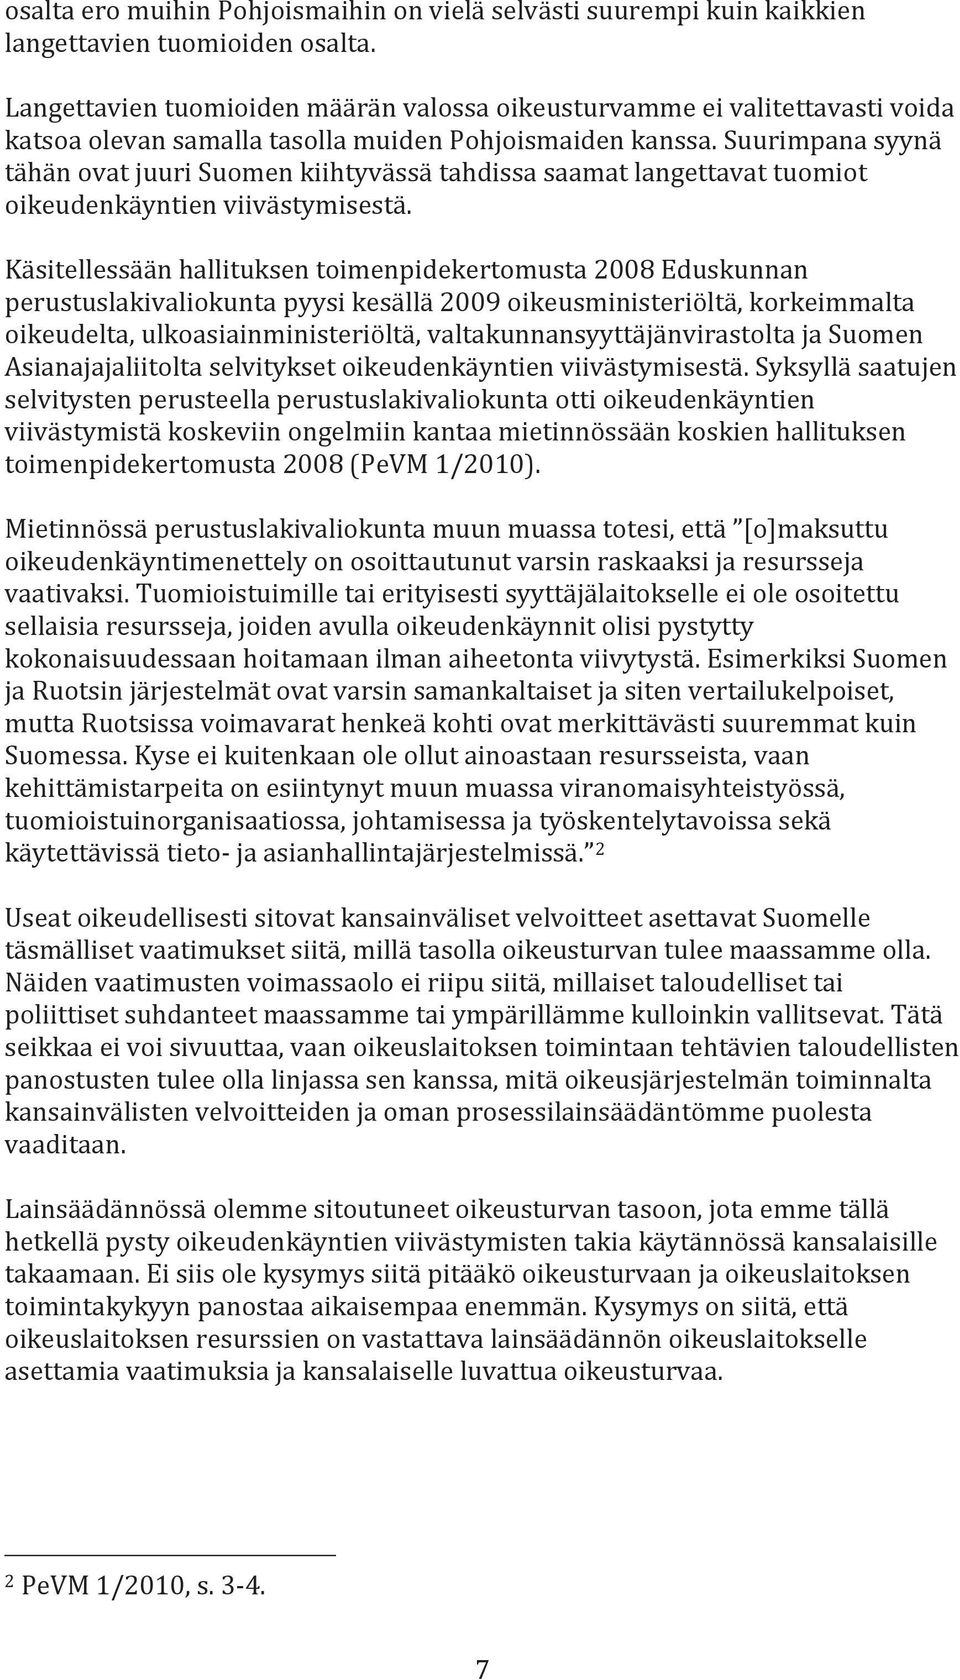 Suurimpana syynä tähän ovat juuri Suomen kiihtyvässä tahdissa saamat langettavat tuomiot oikeudenkäyntien viivästymisestä.